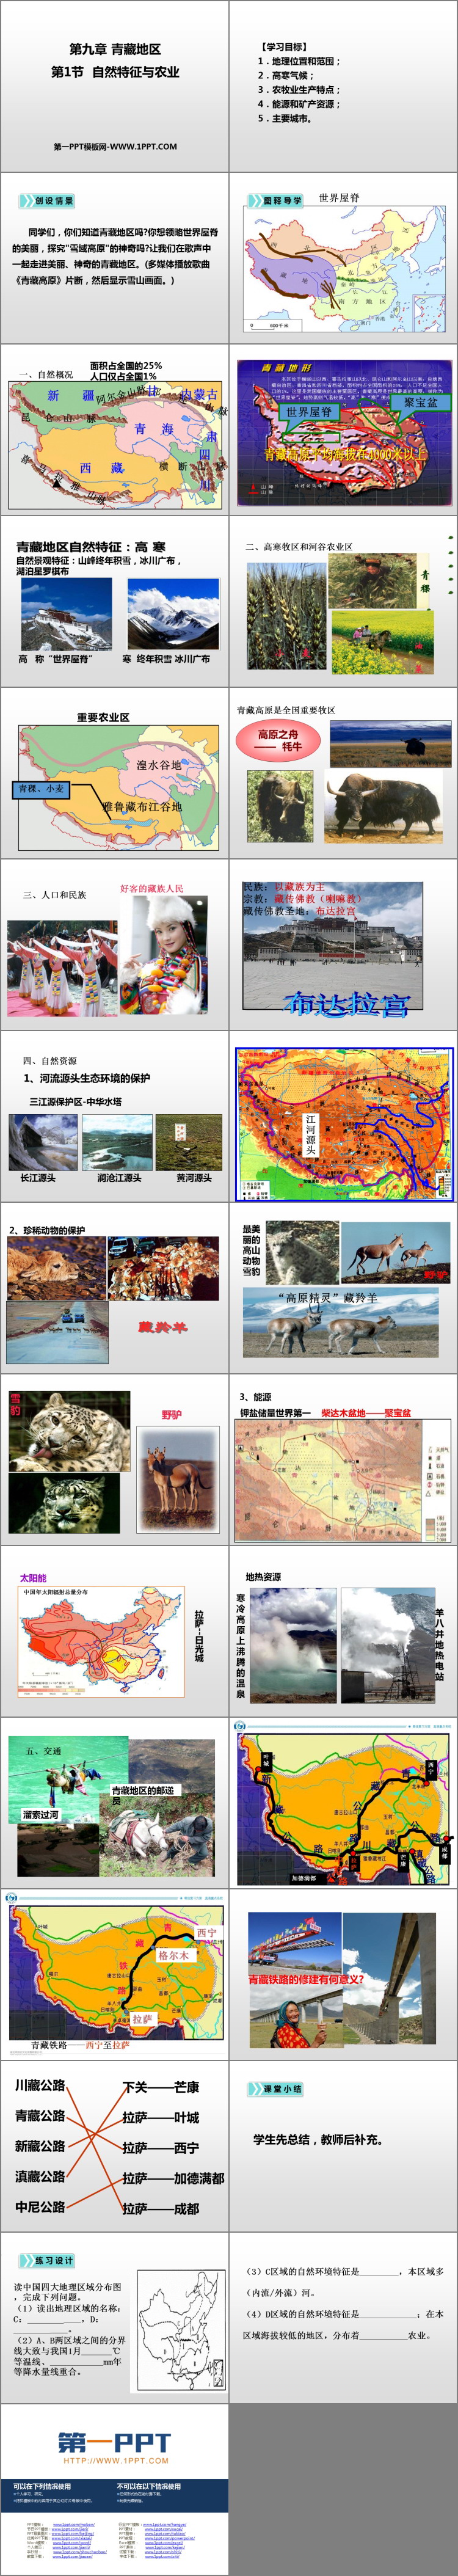 《自然特征与农业》青藏地区PPT下载-预览图02